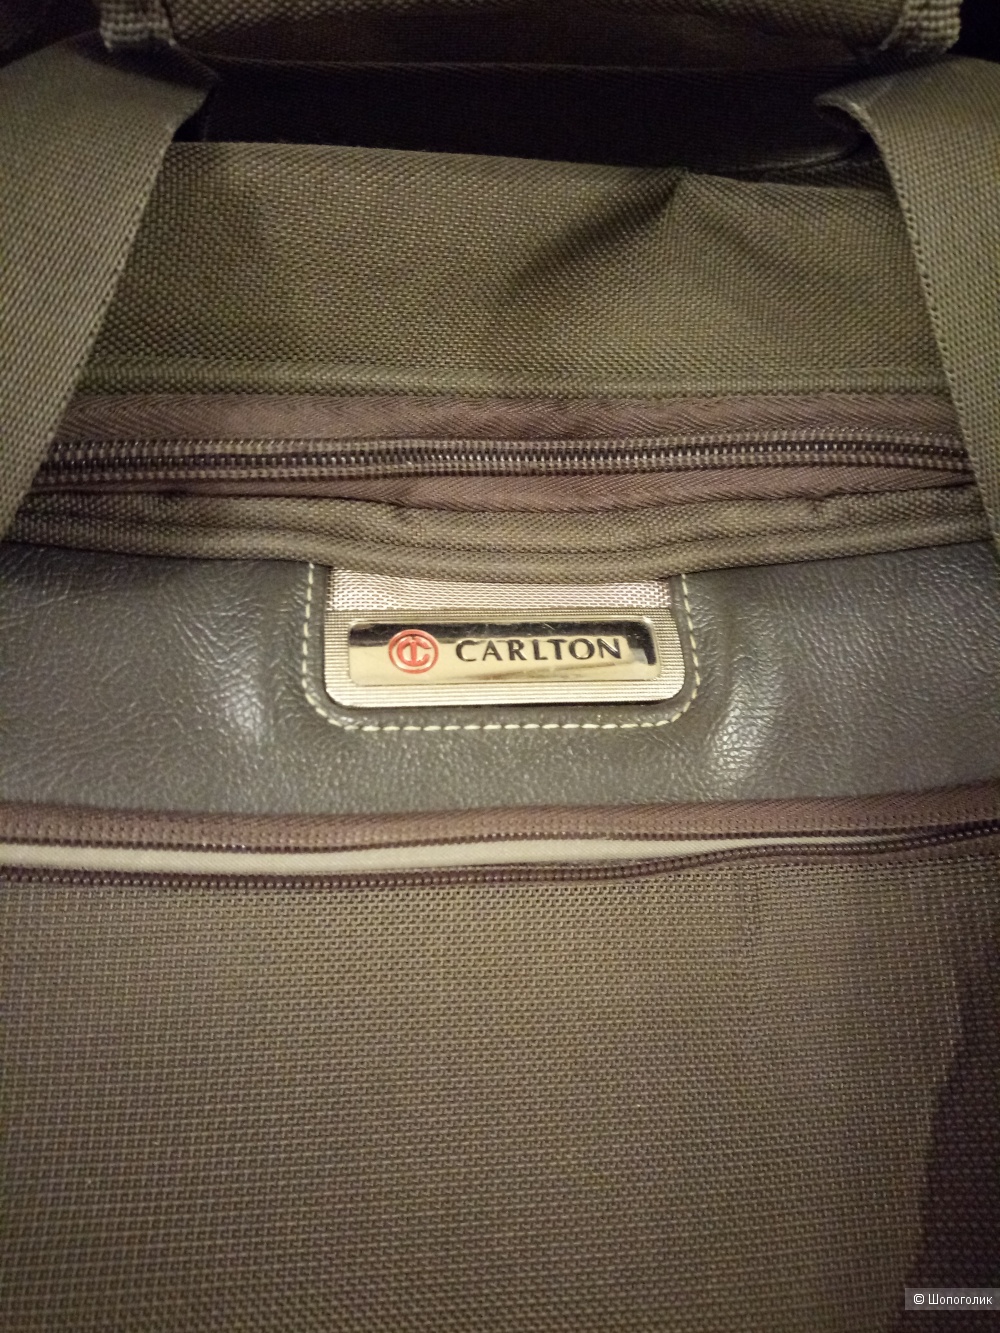 Багажная сумка Carlton, 50*25*20